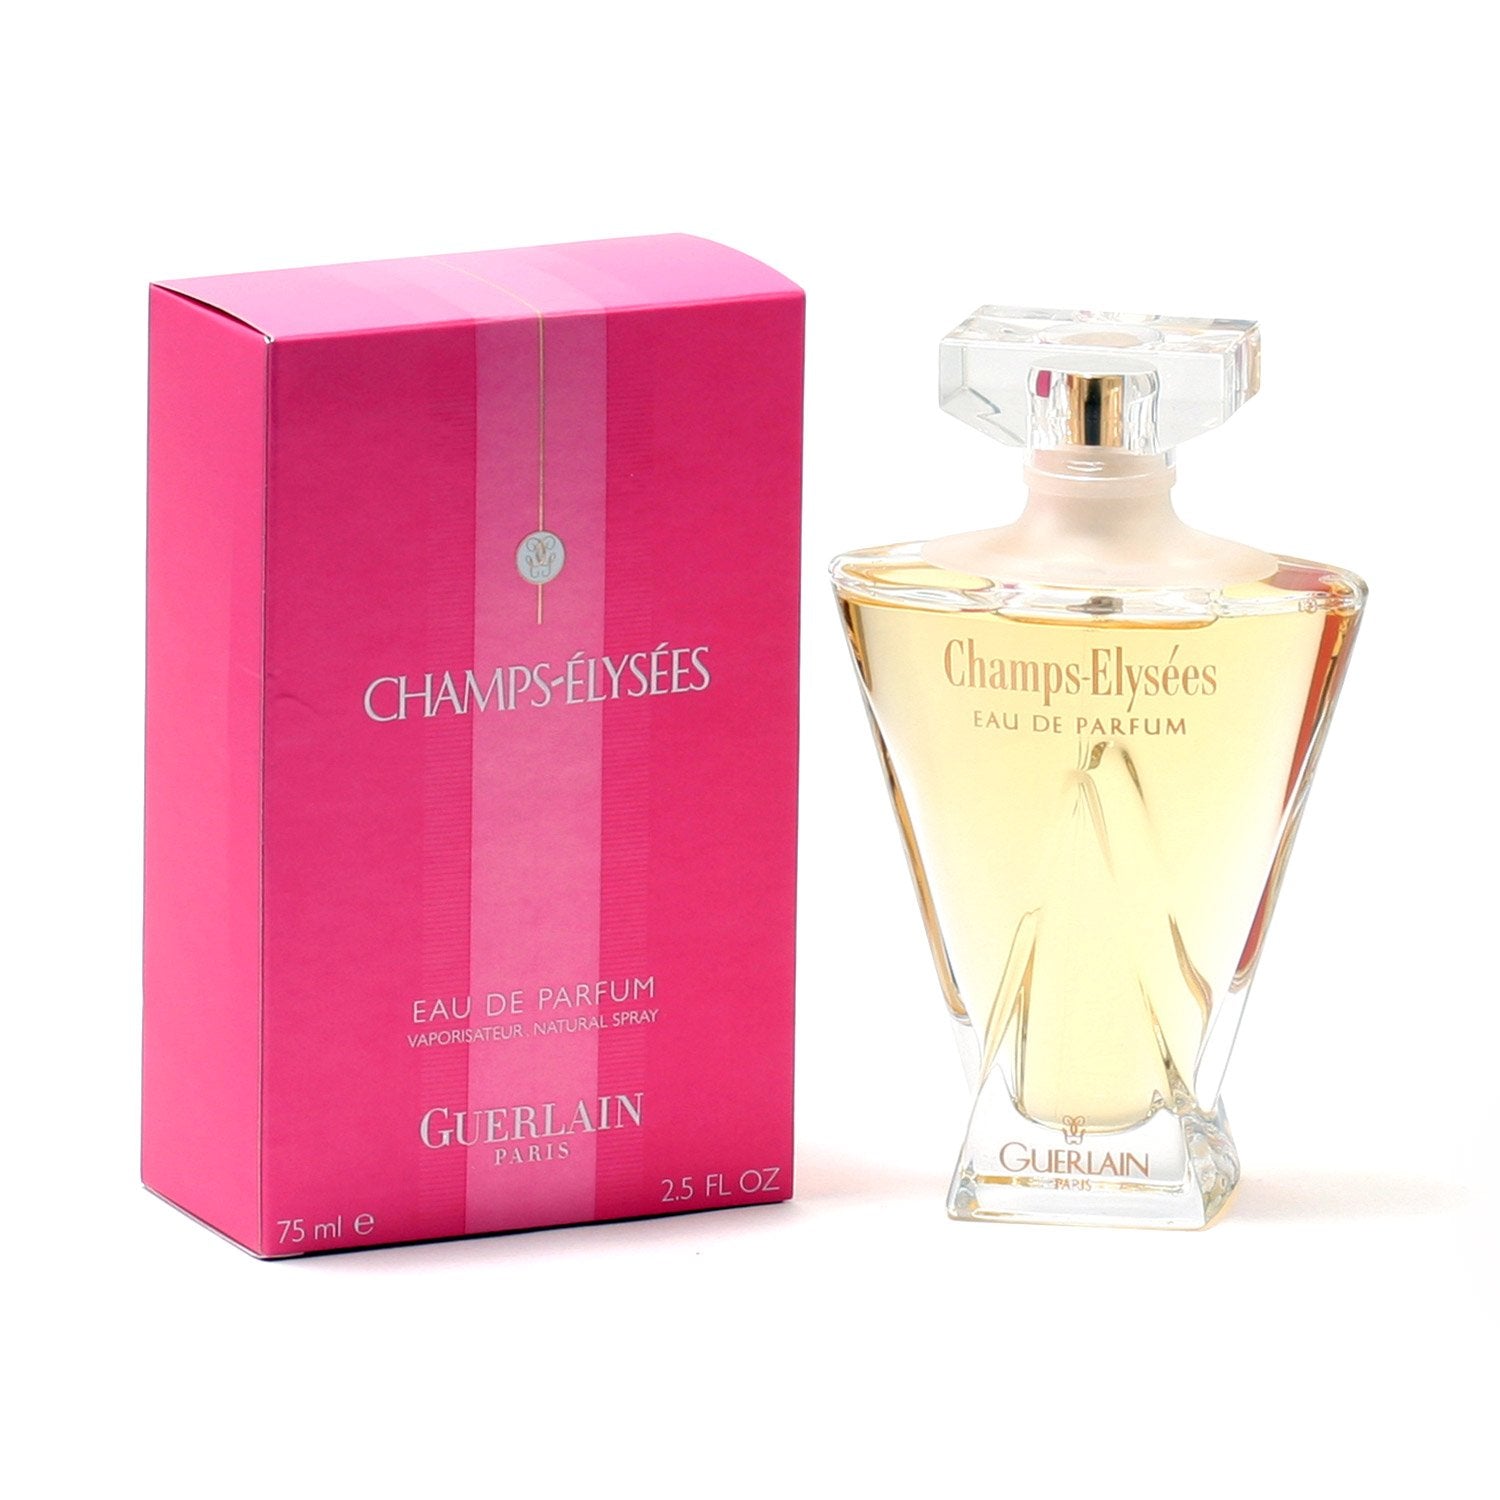 Perfume - CHAMPS ELYSEES FOR WOMEN BY GUERLAIN - EAU DE PARFUM SPRAY, 2.5 OZ